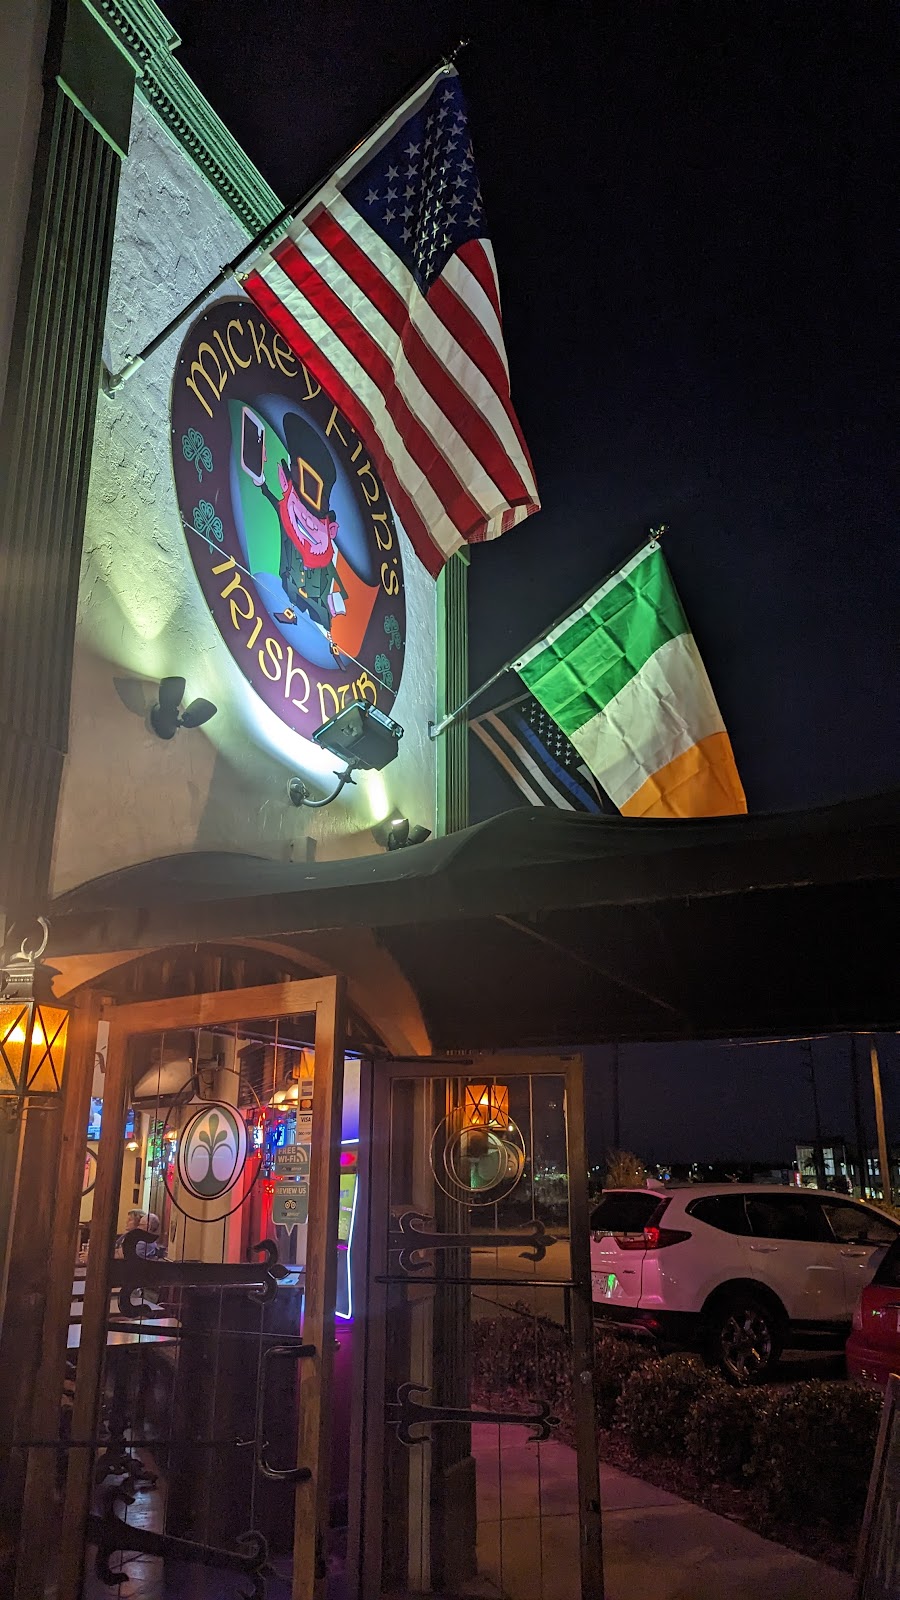 Wolfhound Irish Pub